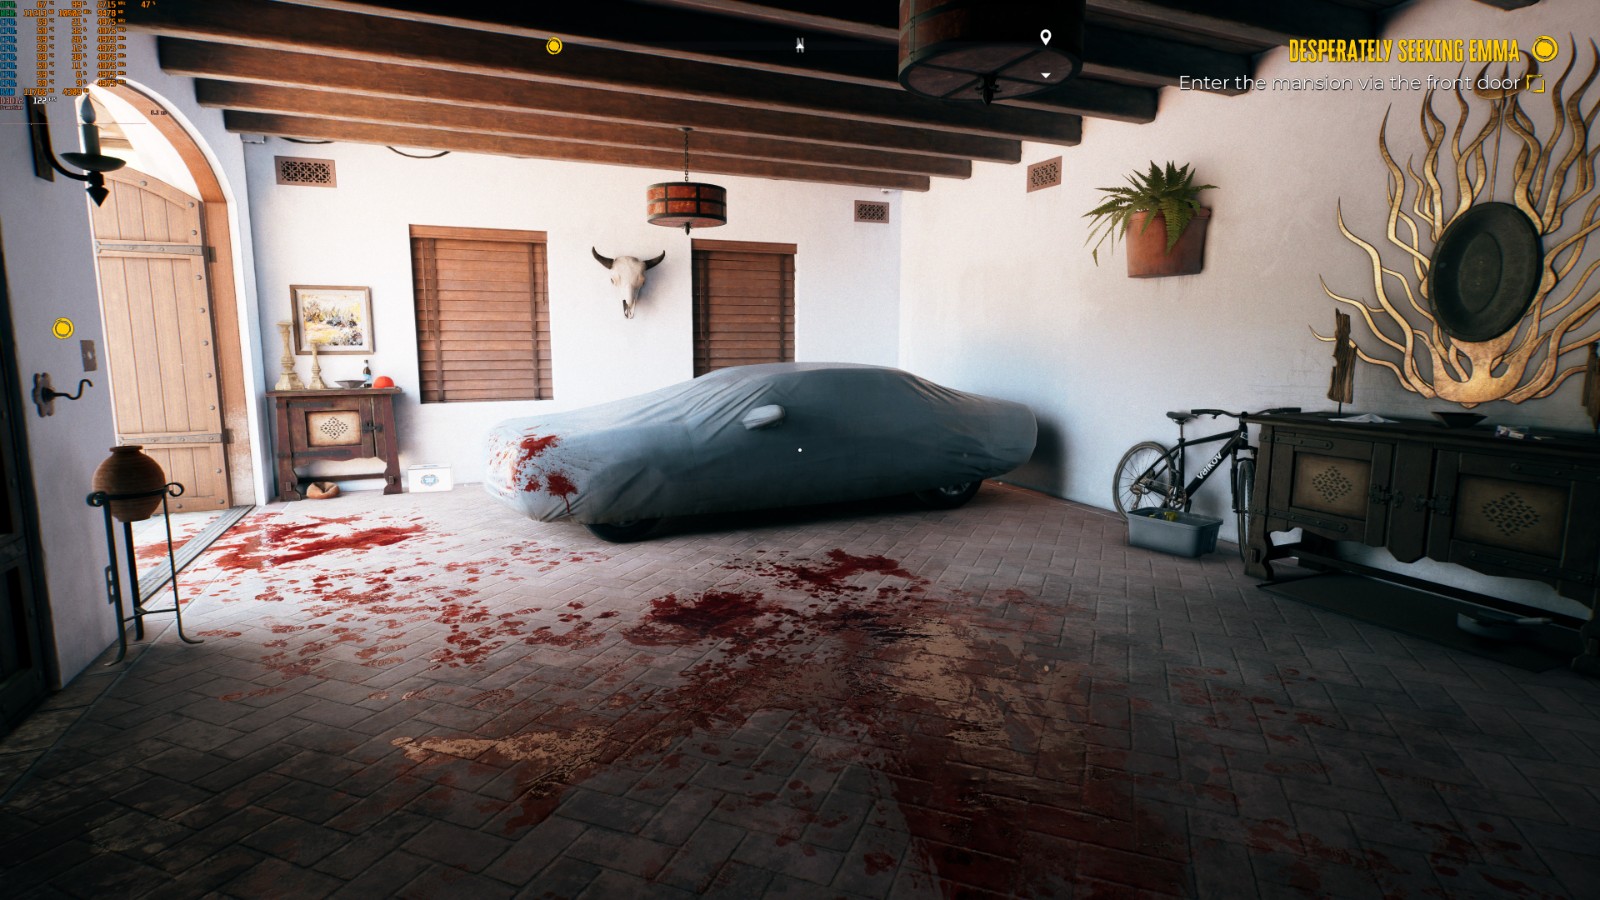 《死亡島2》全新截圖公布 外媒稱最好看的PC遊戲之一